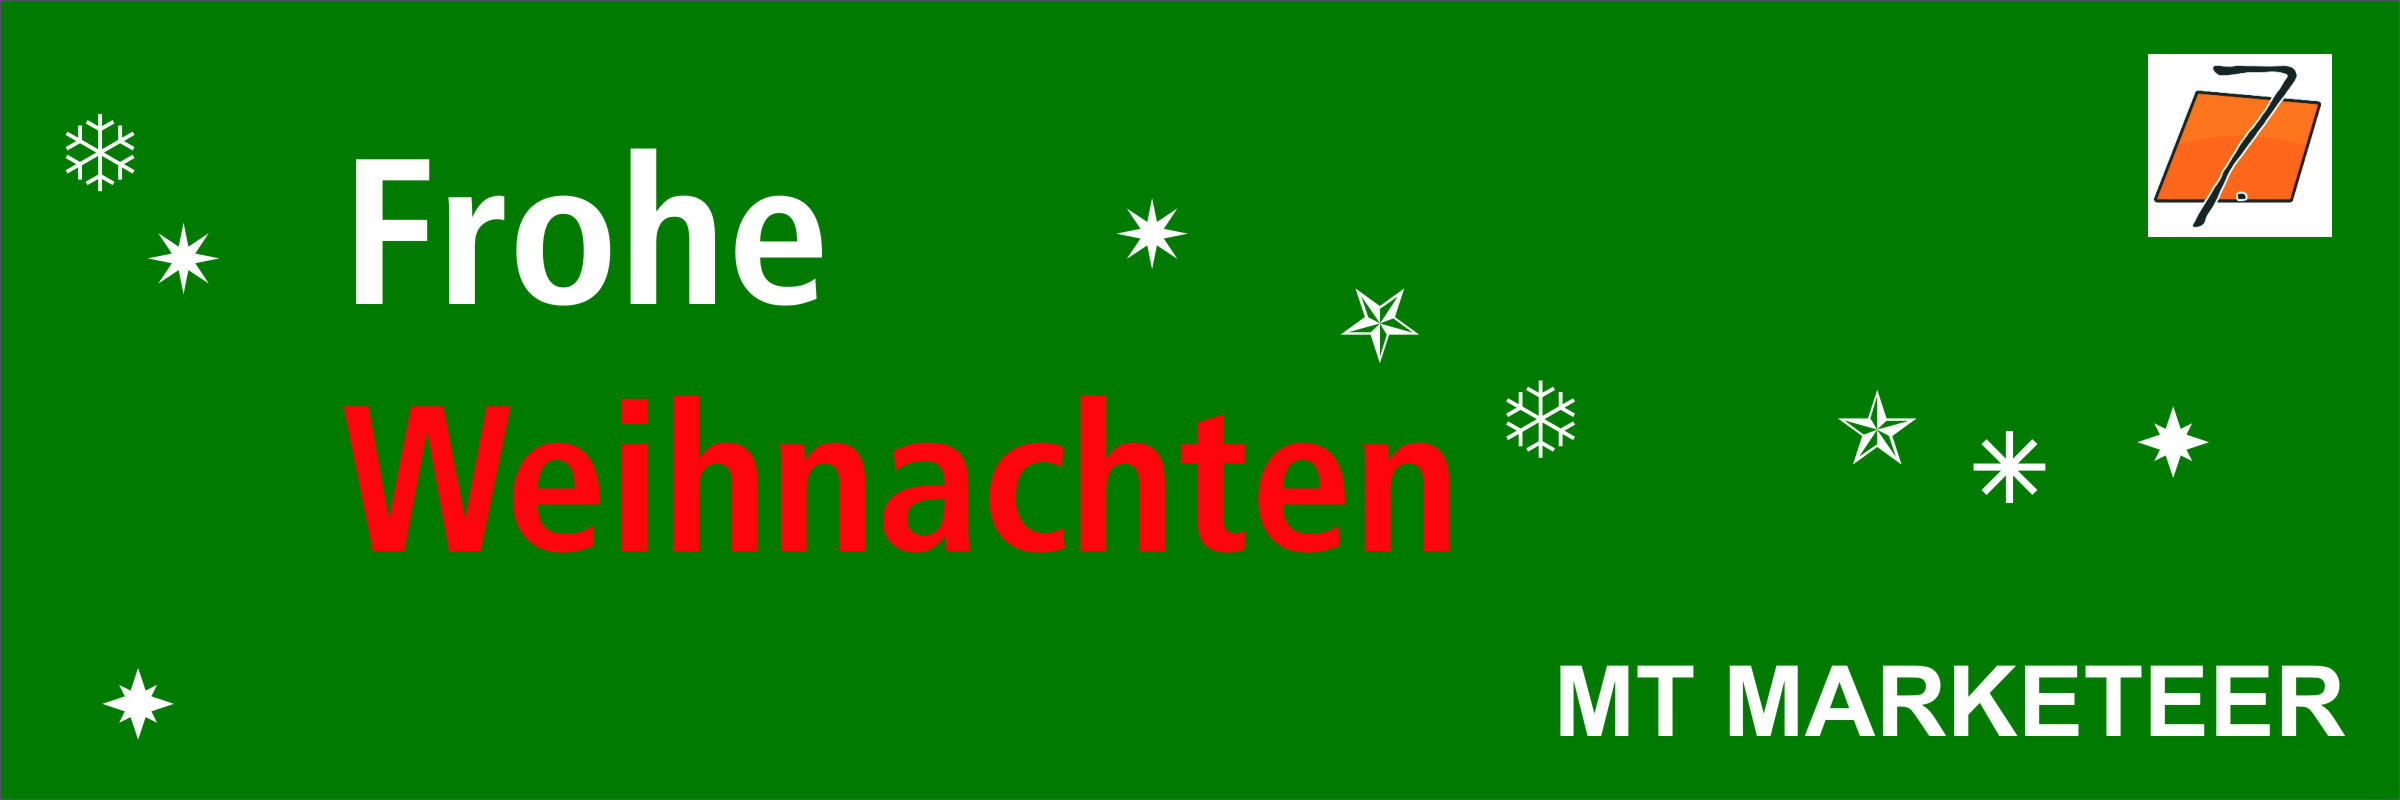 Frohe Weihnachten 2018 wünscht MT MARKETEER mit Michael Tönsing und allen Unterstützern